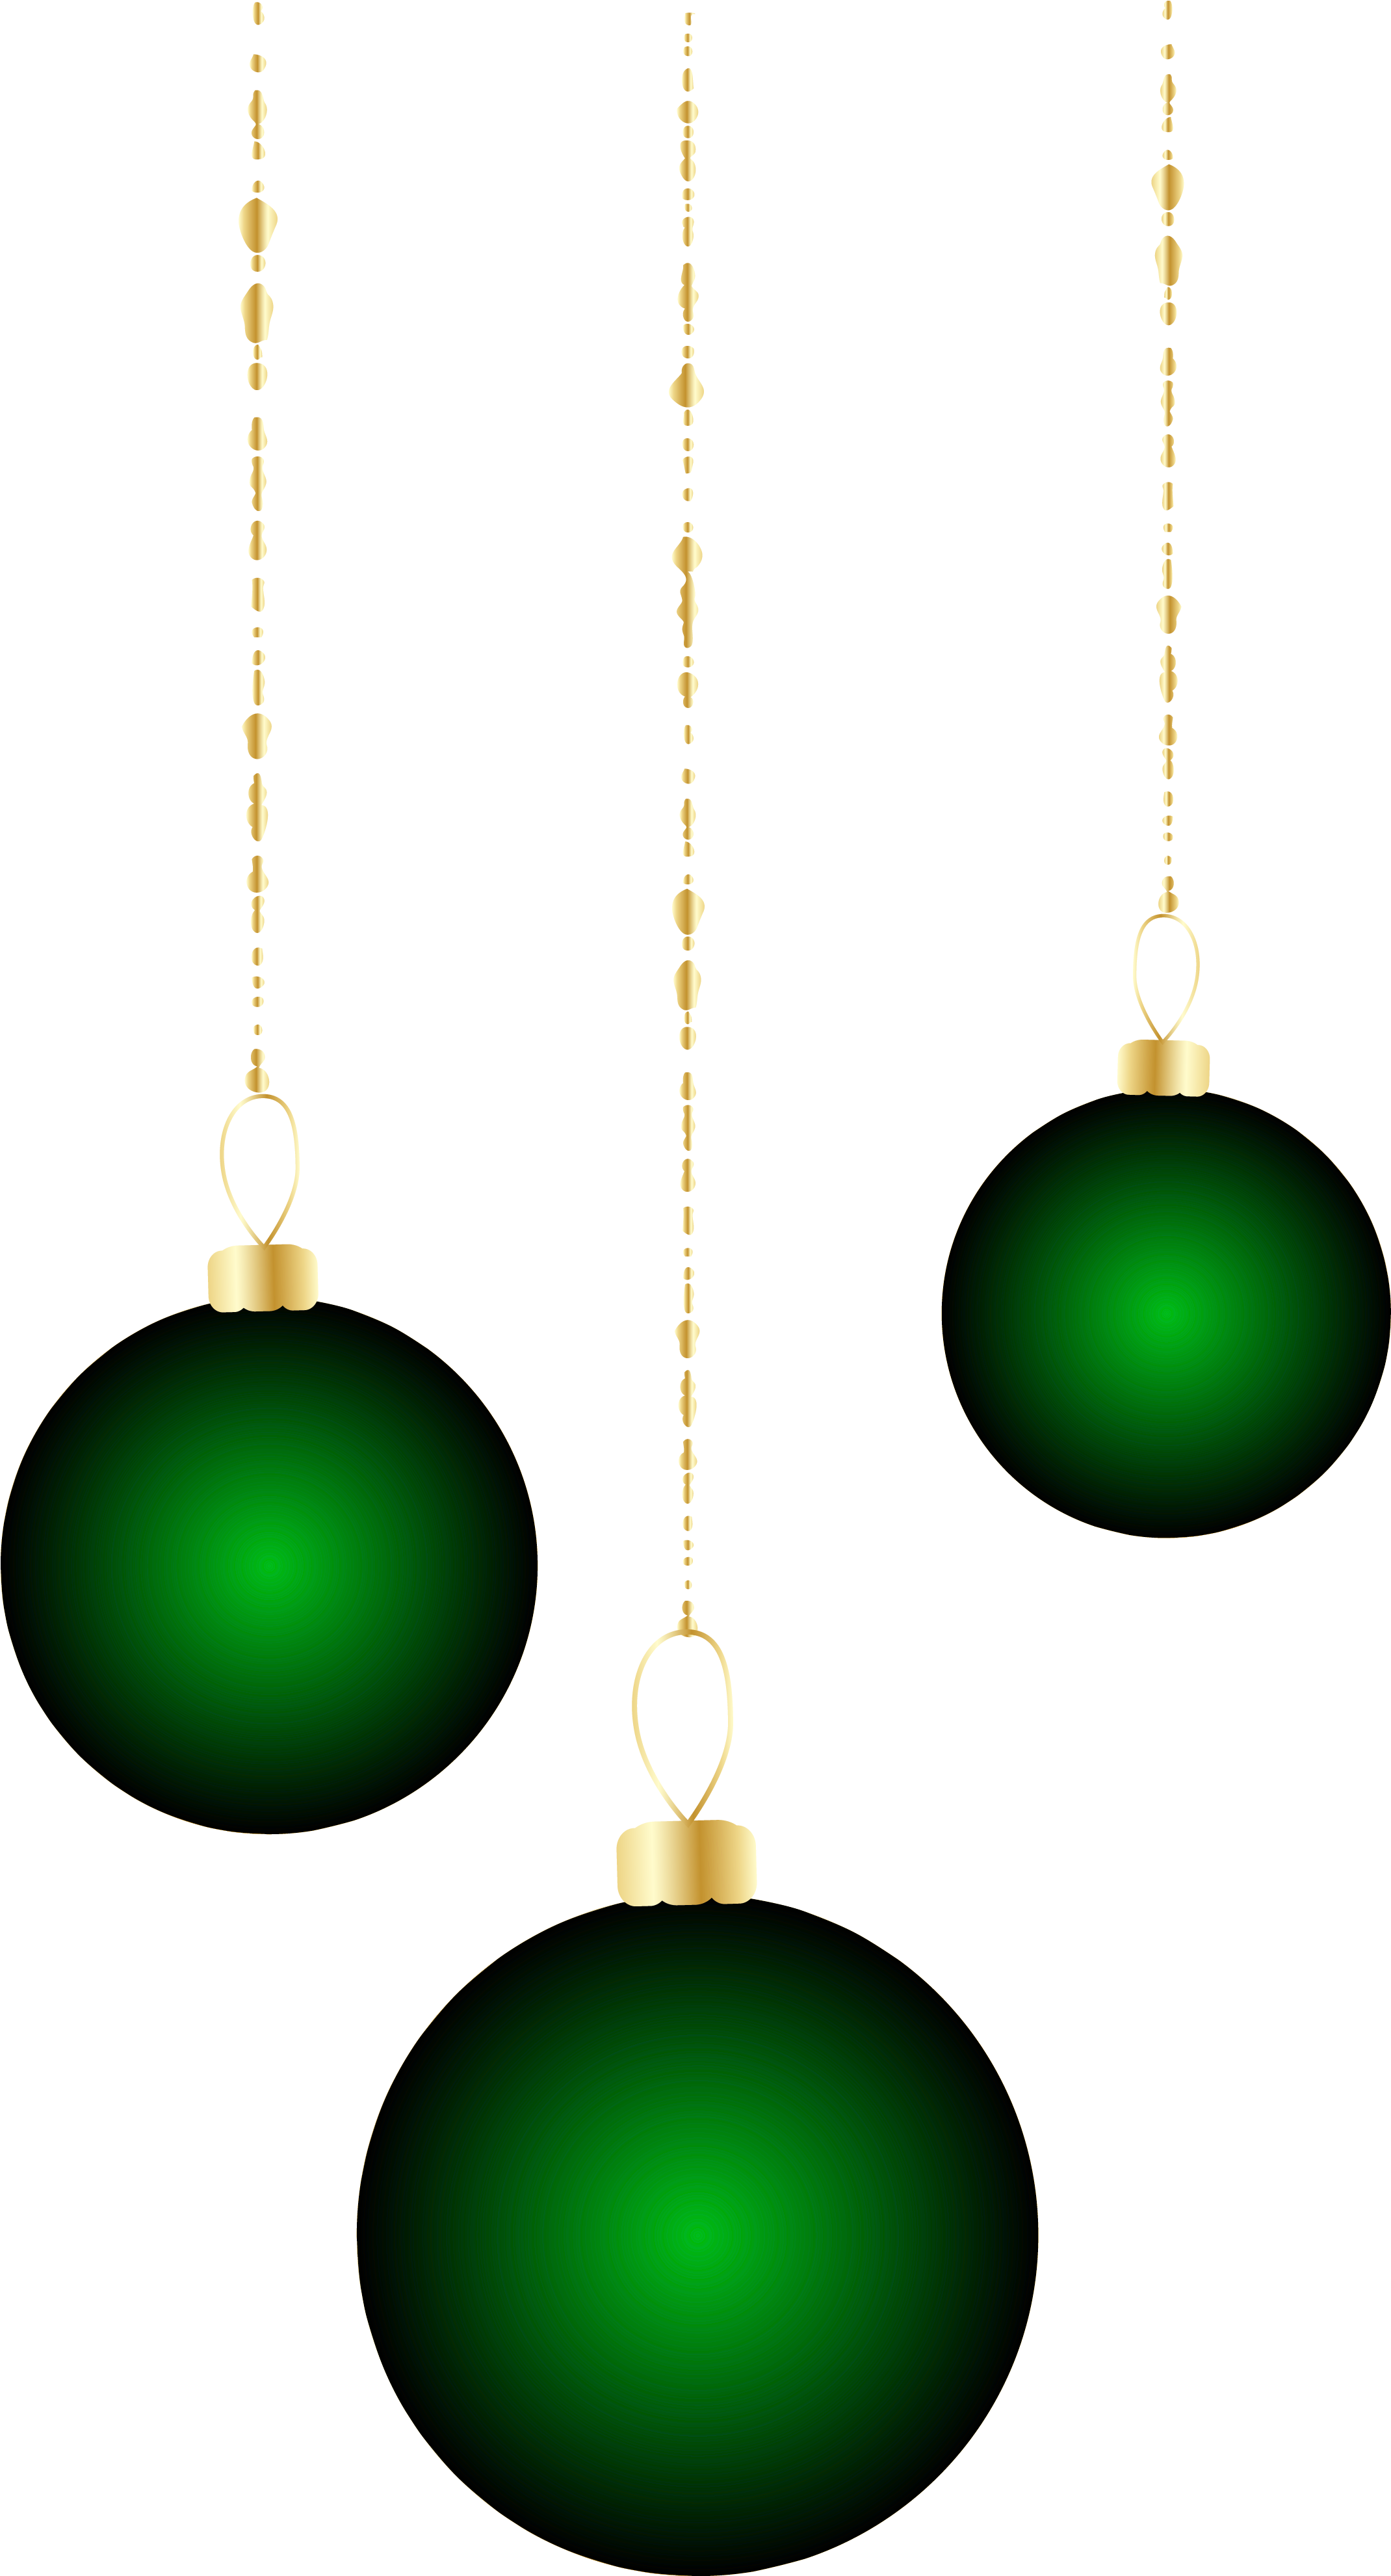 Transparent Christmas Green Ornaments Png Clipart - Clip Art (2235x4005)